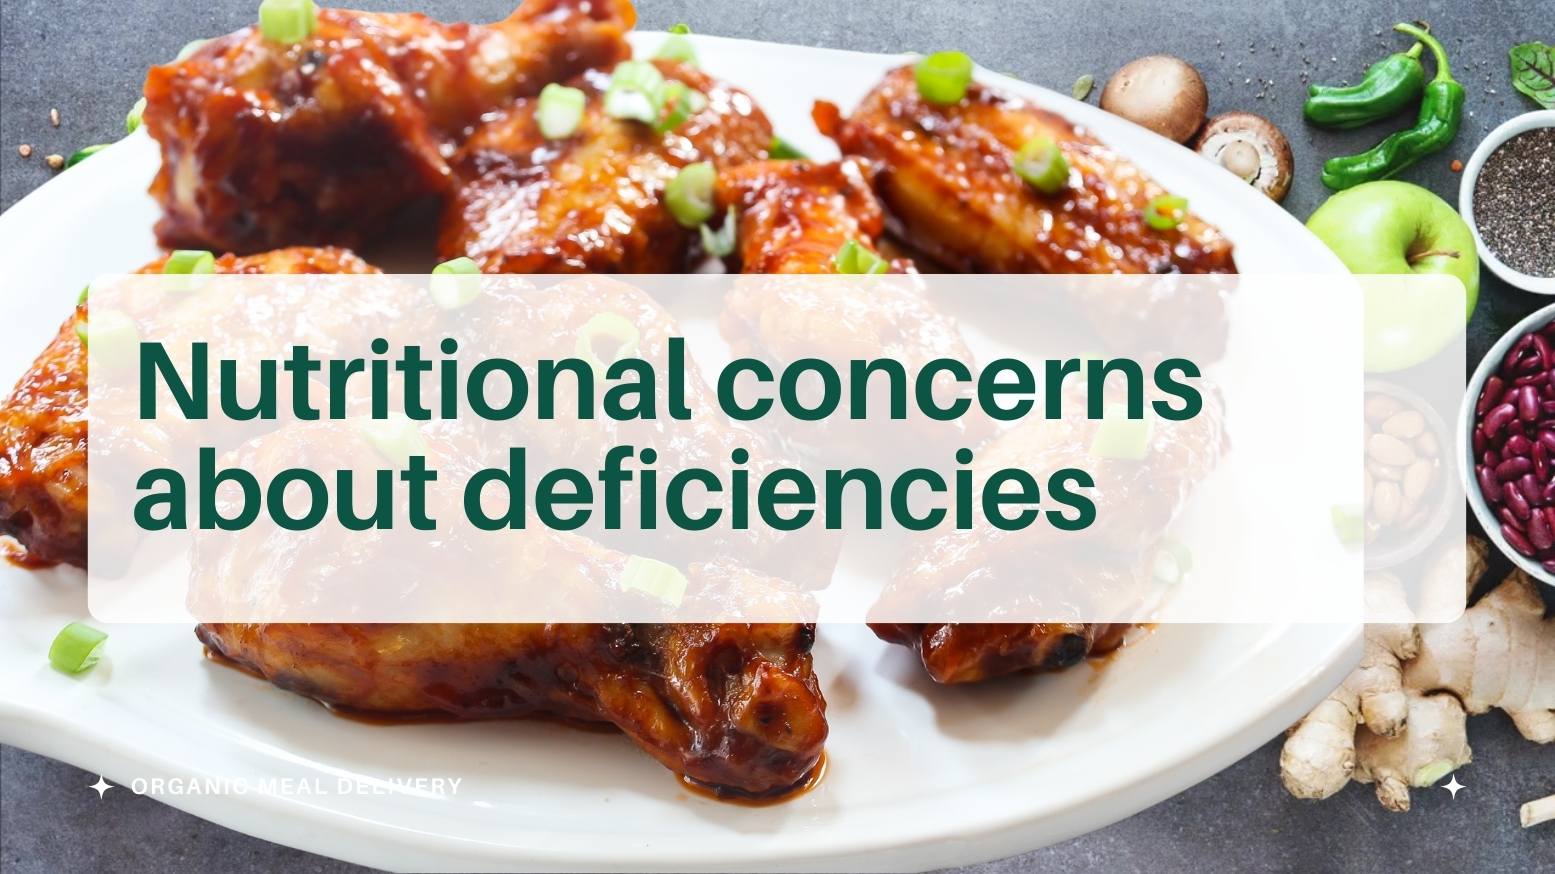 Nutritional concerns about deficiencies